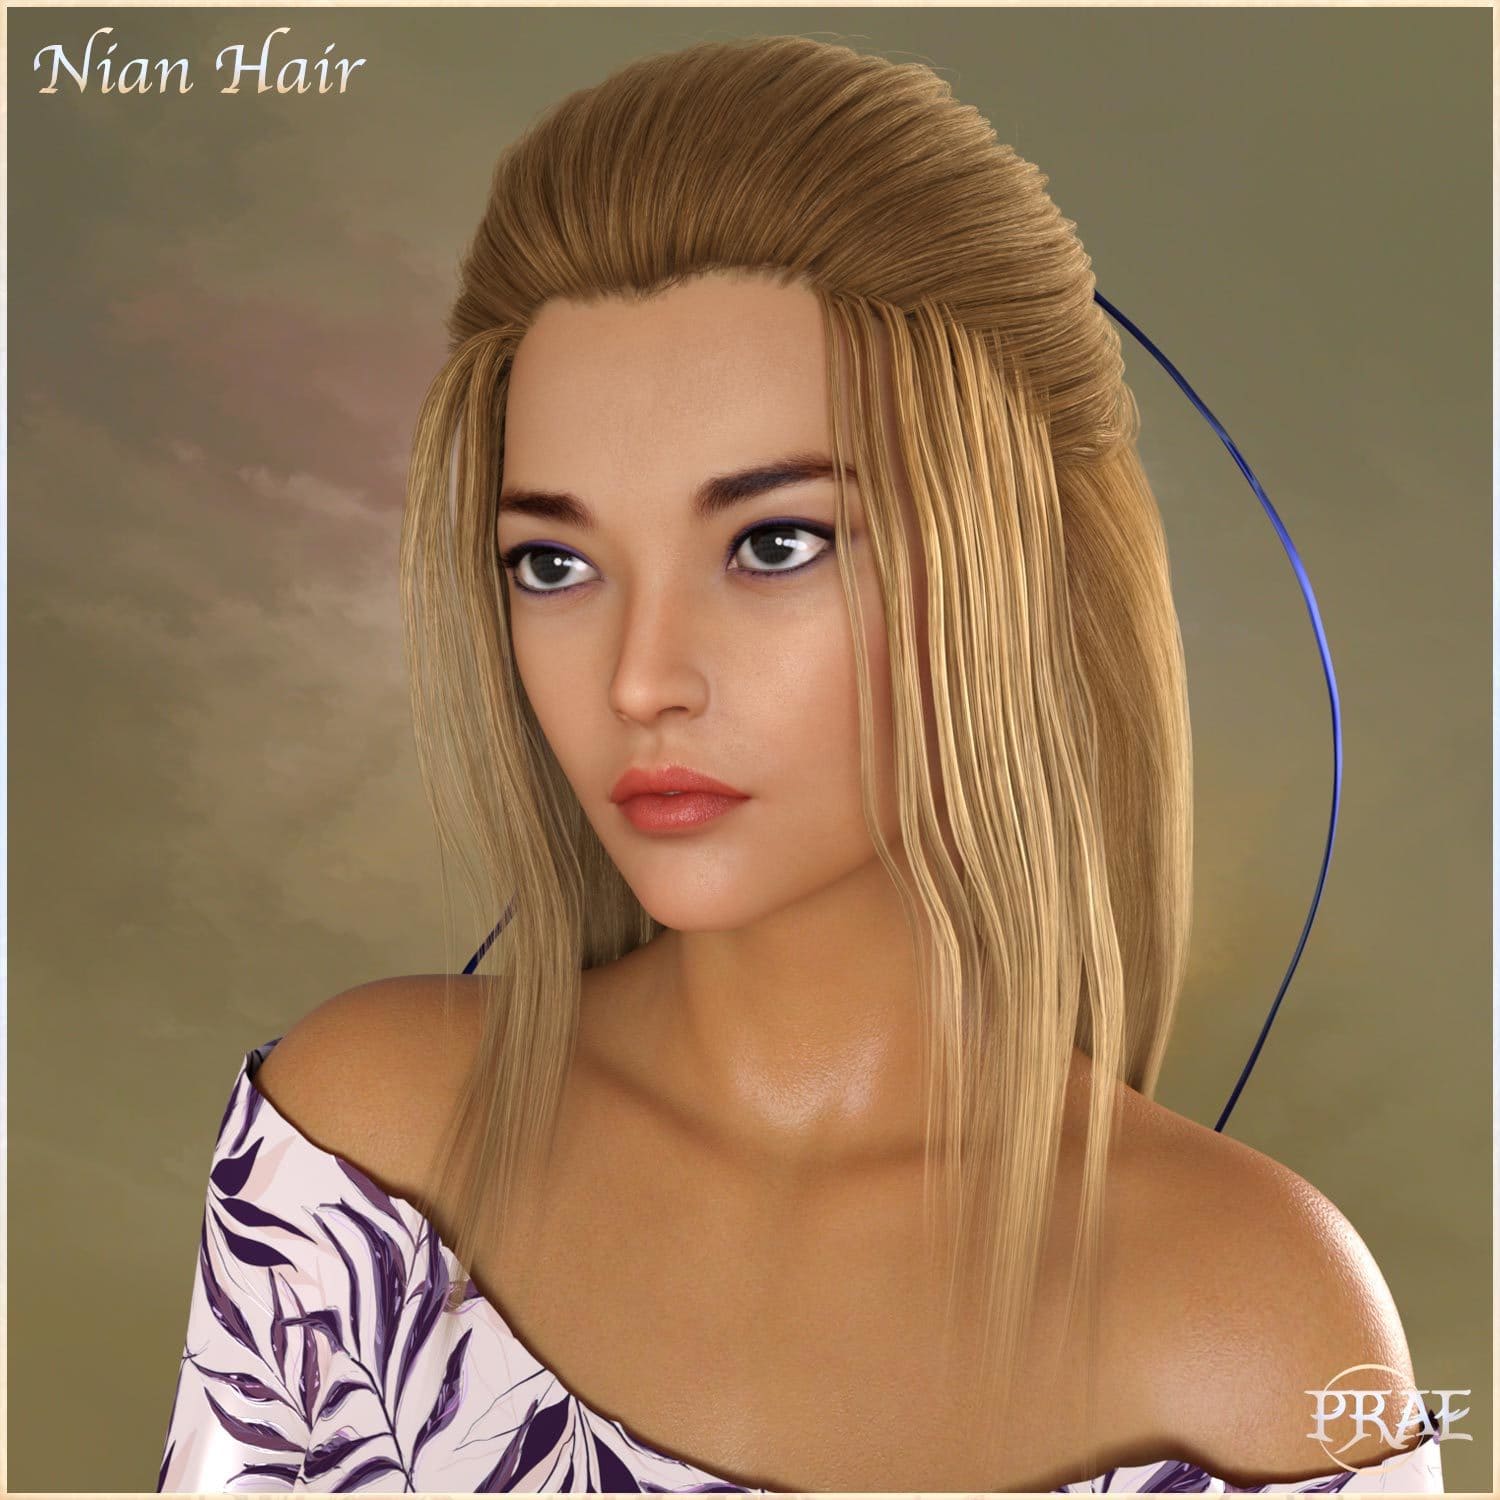 Prae-Nian Hair For G8 Daz_DAZ3D下载站